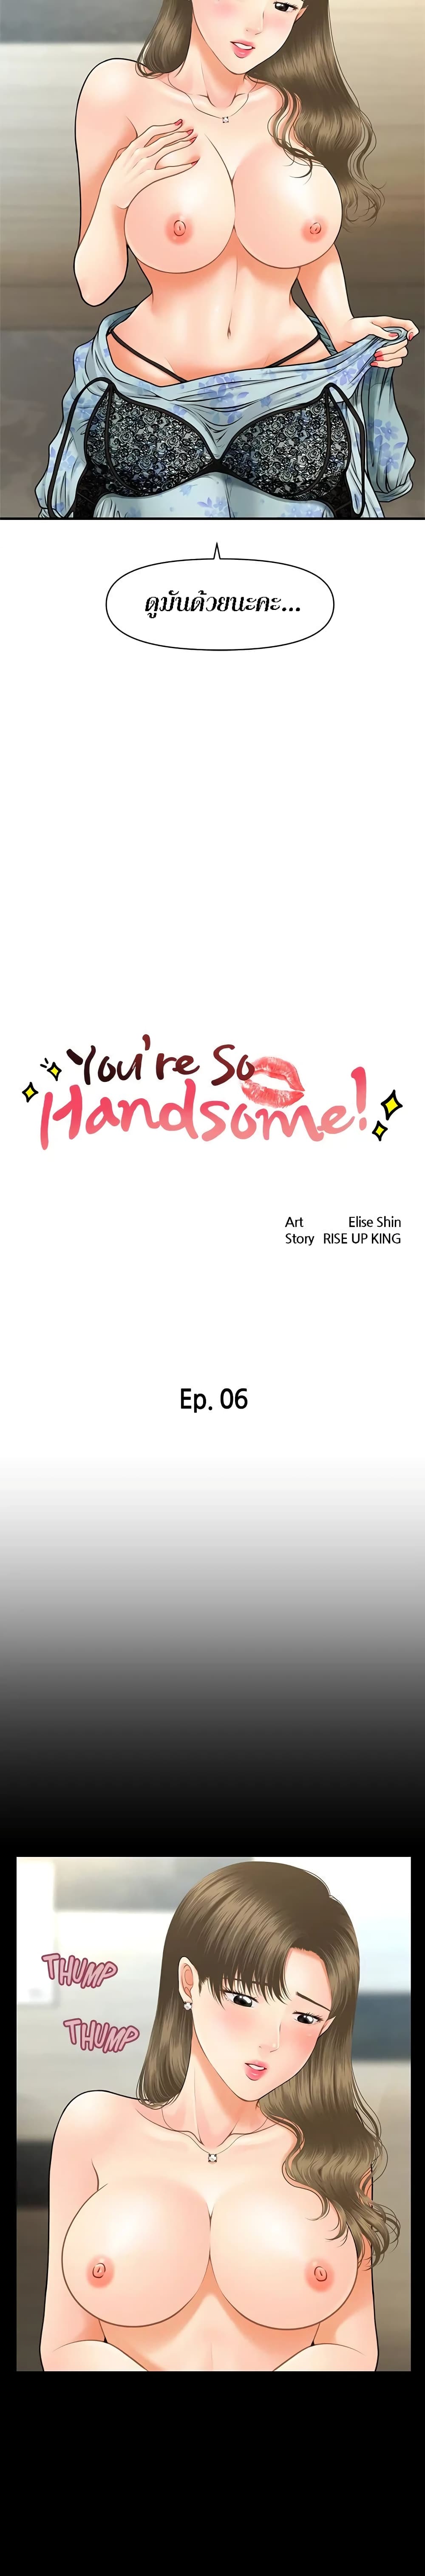 Hey, Handsome 6-6